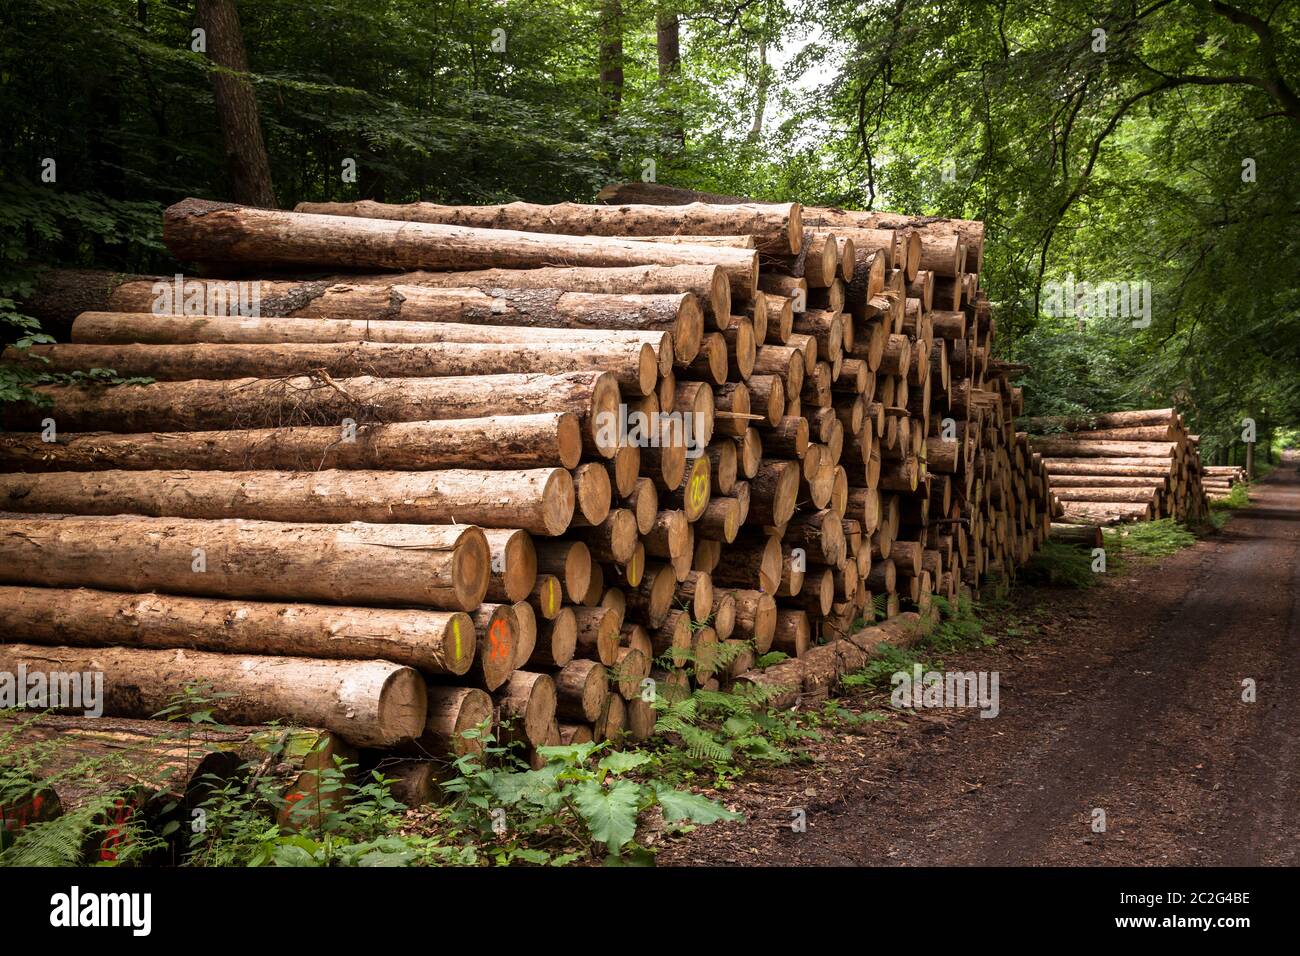 Alberi in legno, tronchi d'albero, in una foresta vicino a Haltern nel distretto di Recklinghausen, Renania Settentrionale-Vestfalia, Germania. Gefaellte Baeume, Baumstaemme, i Foto Stock